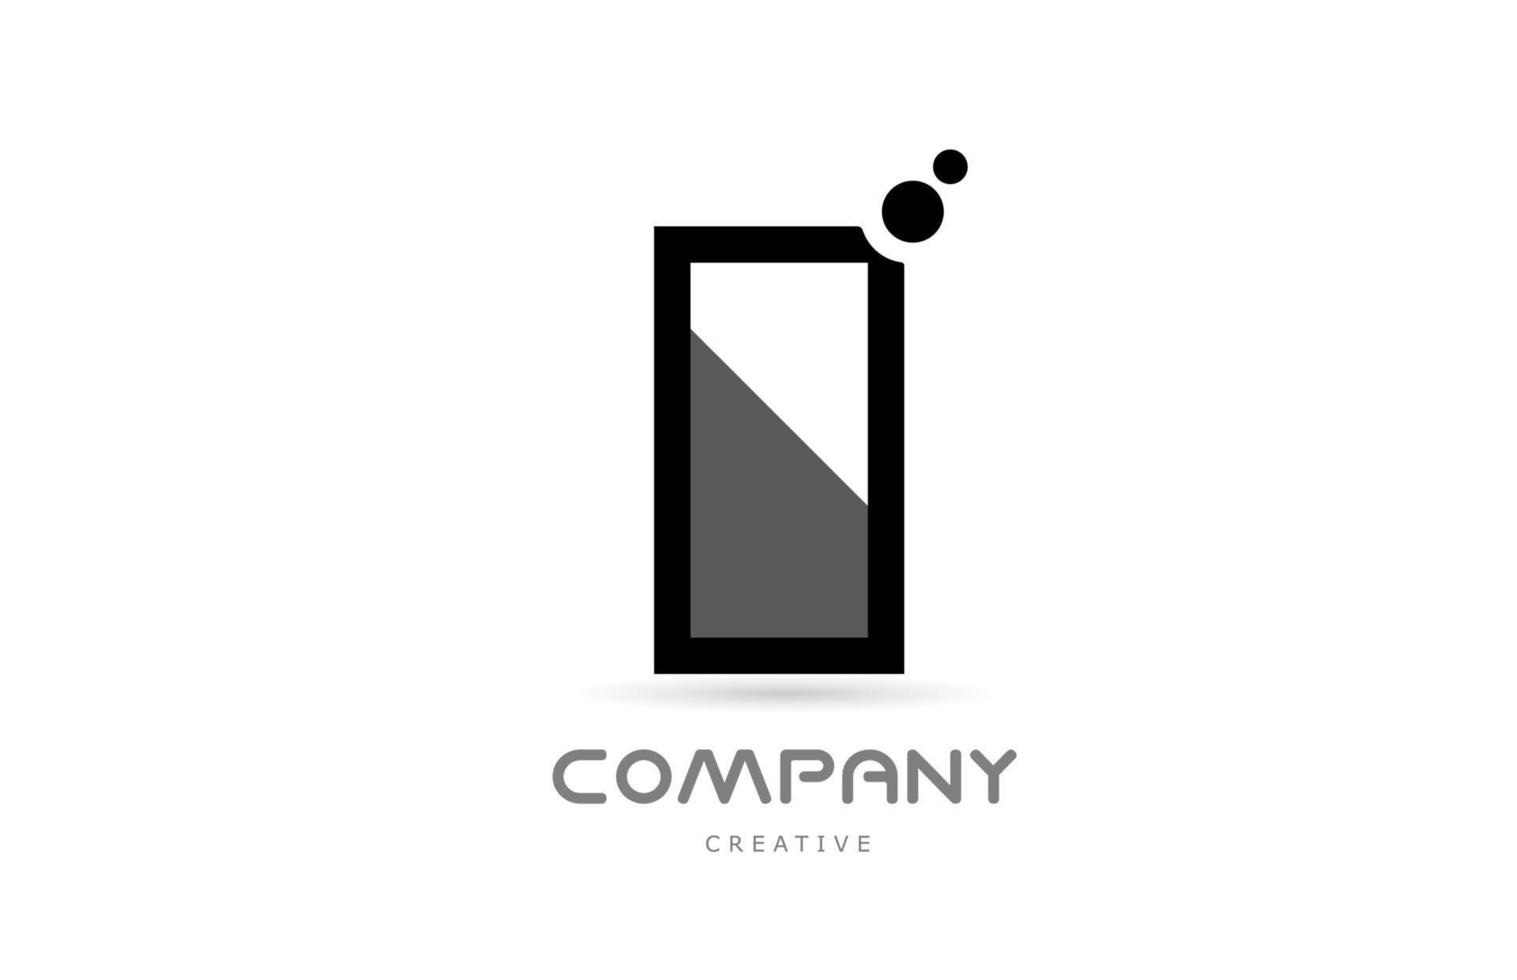 i icono del logotipo de la letra del alfabeto geométrico blanco negro con puntos. plantilla creativa para negocios y empresas. vector